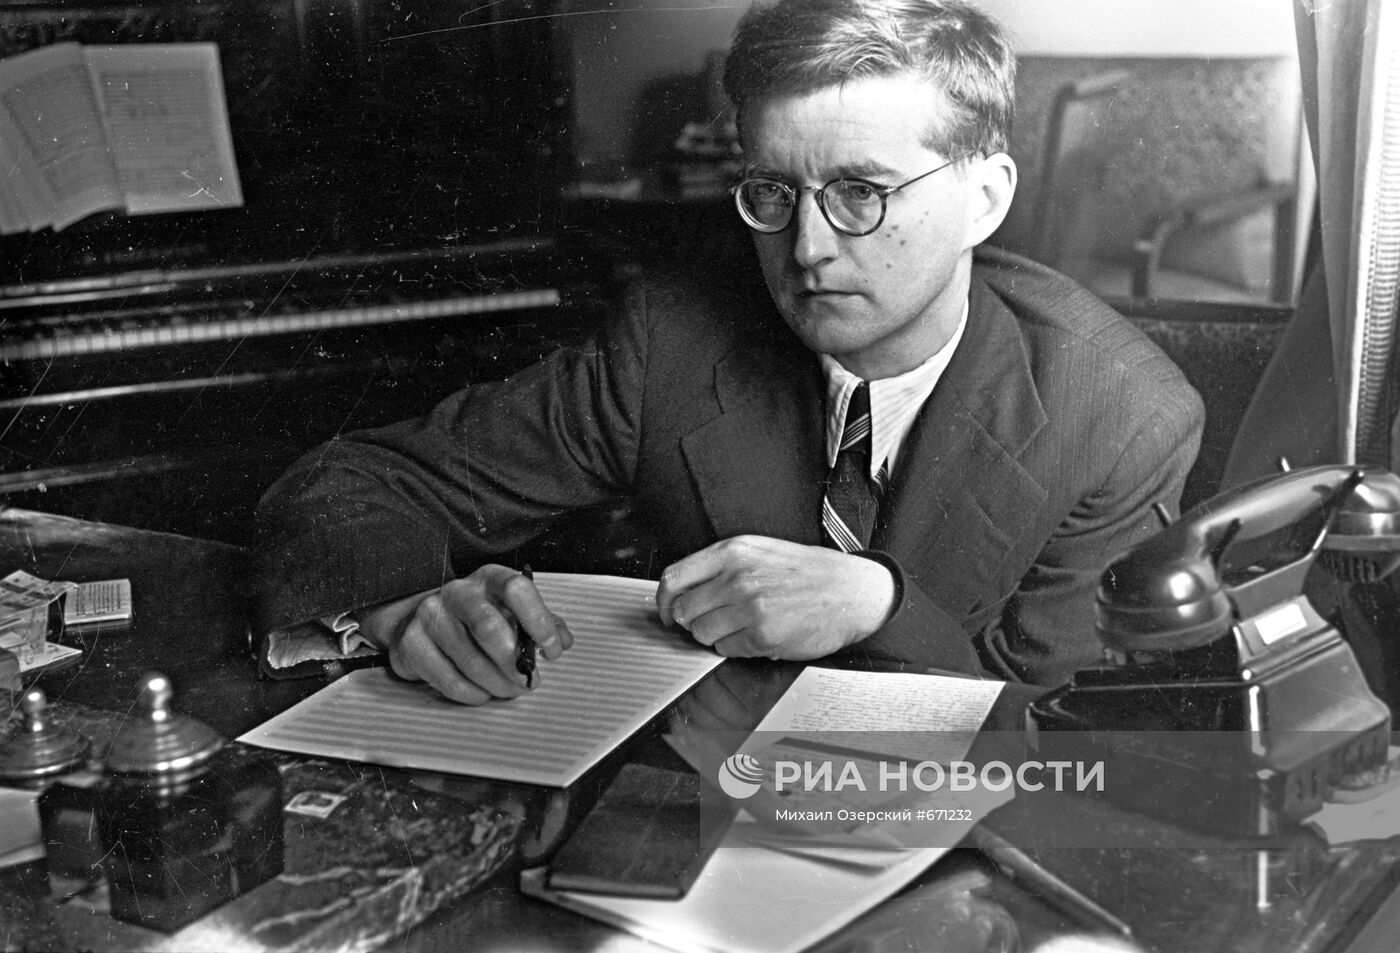 Дмитрий Шостакович во время работы